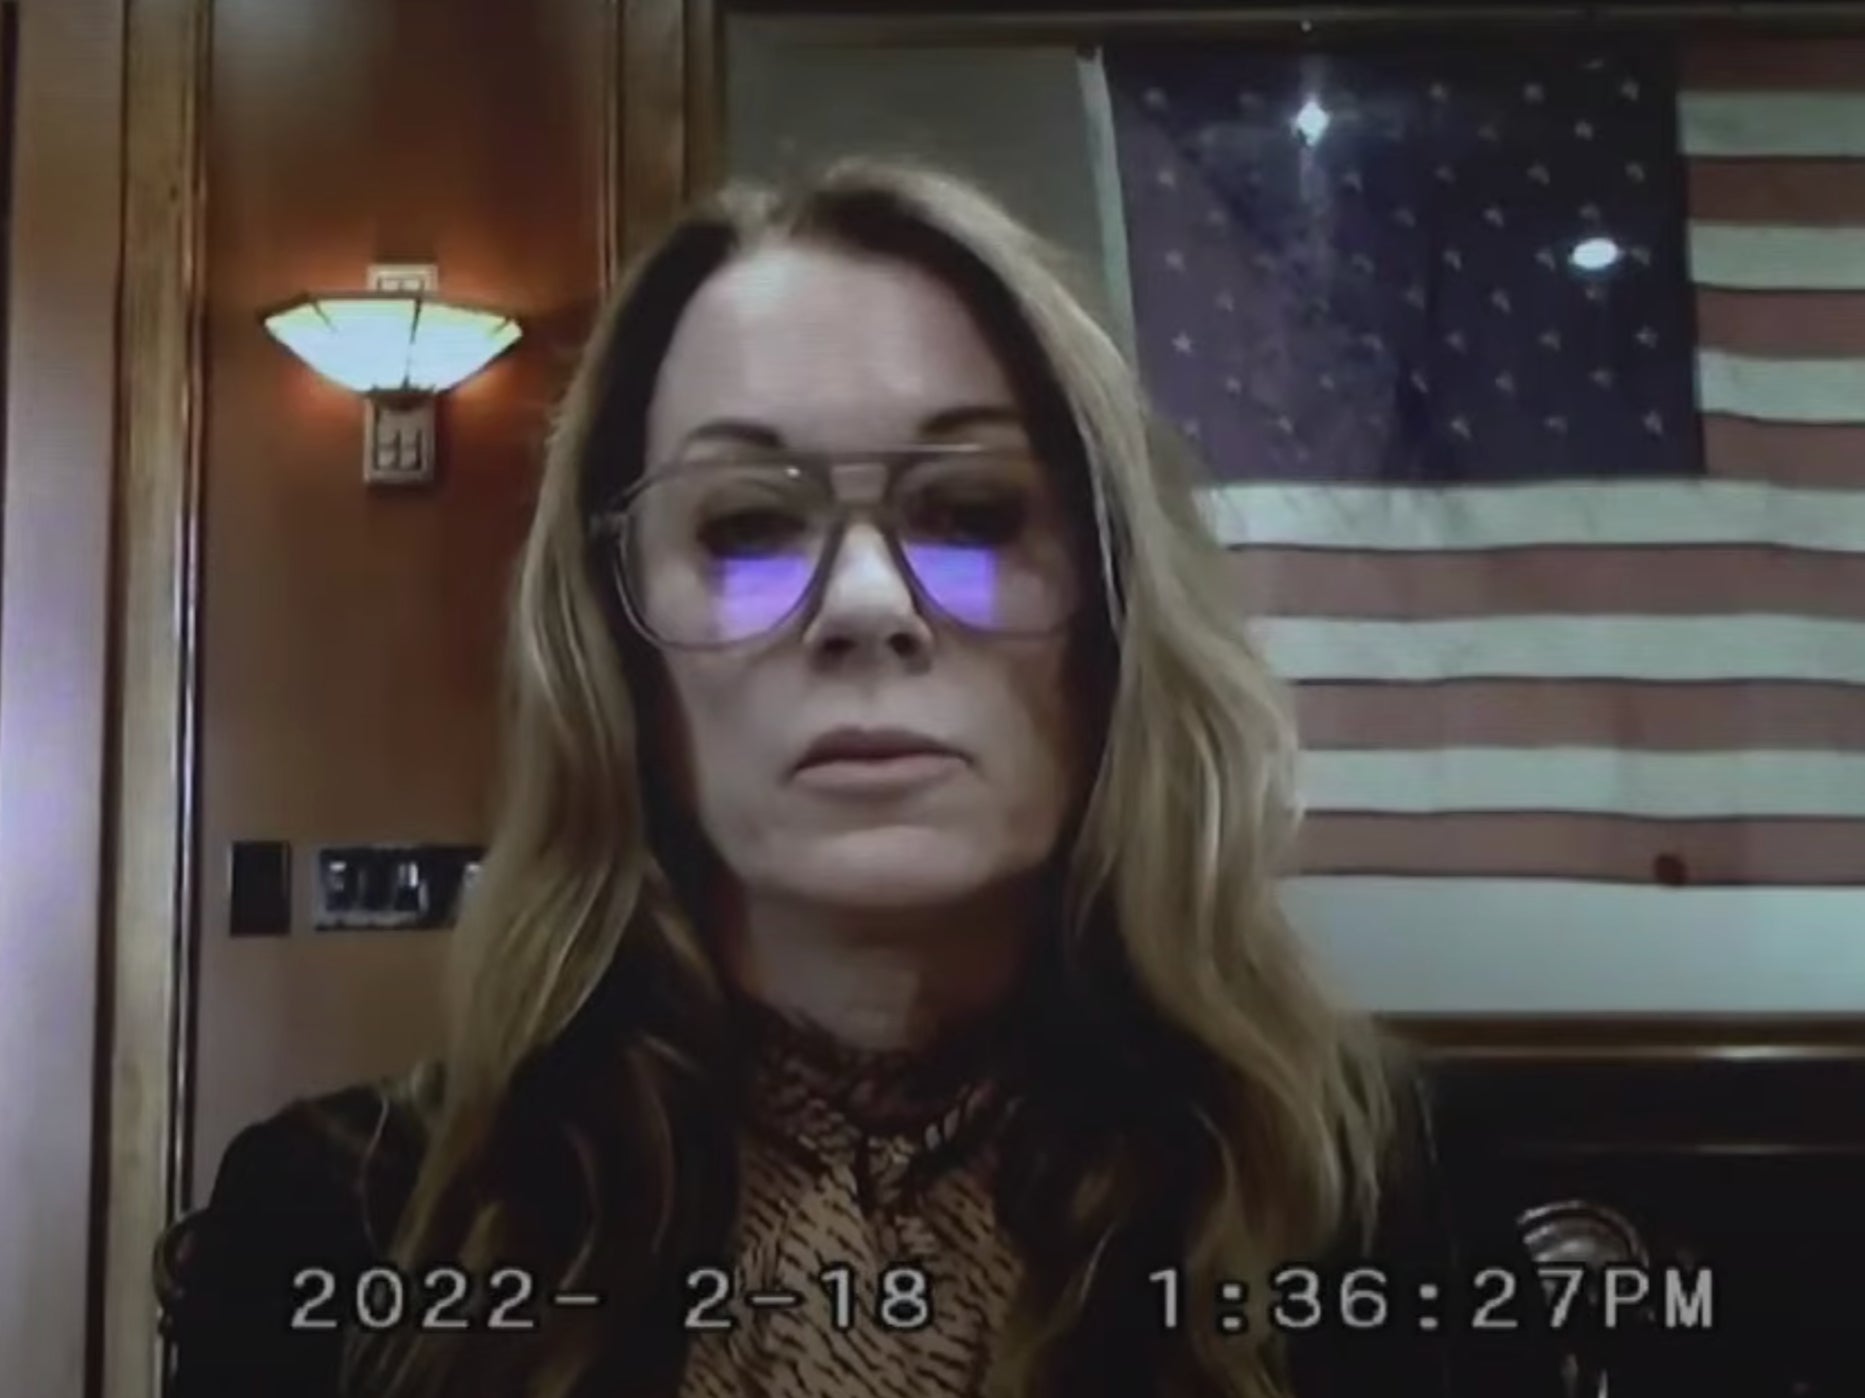 El testimonio de Kate James fue transmitido en forma de clip de vídeo el 14 de abril de 2022 en Fairfax, Virginia